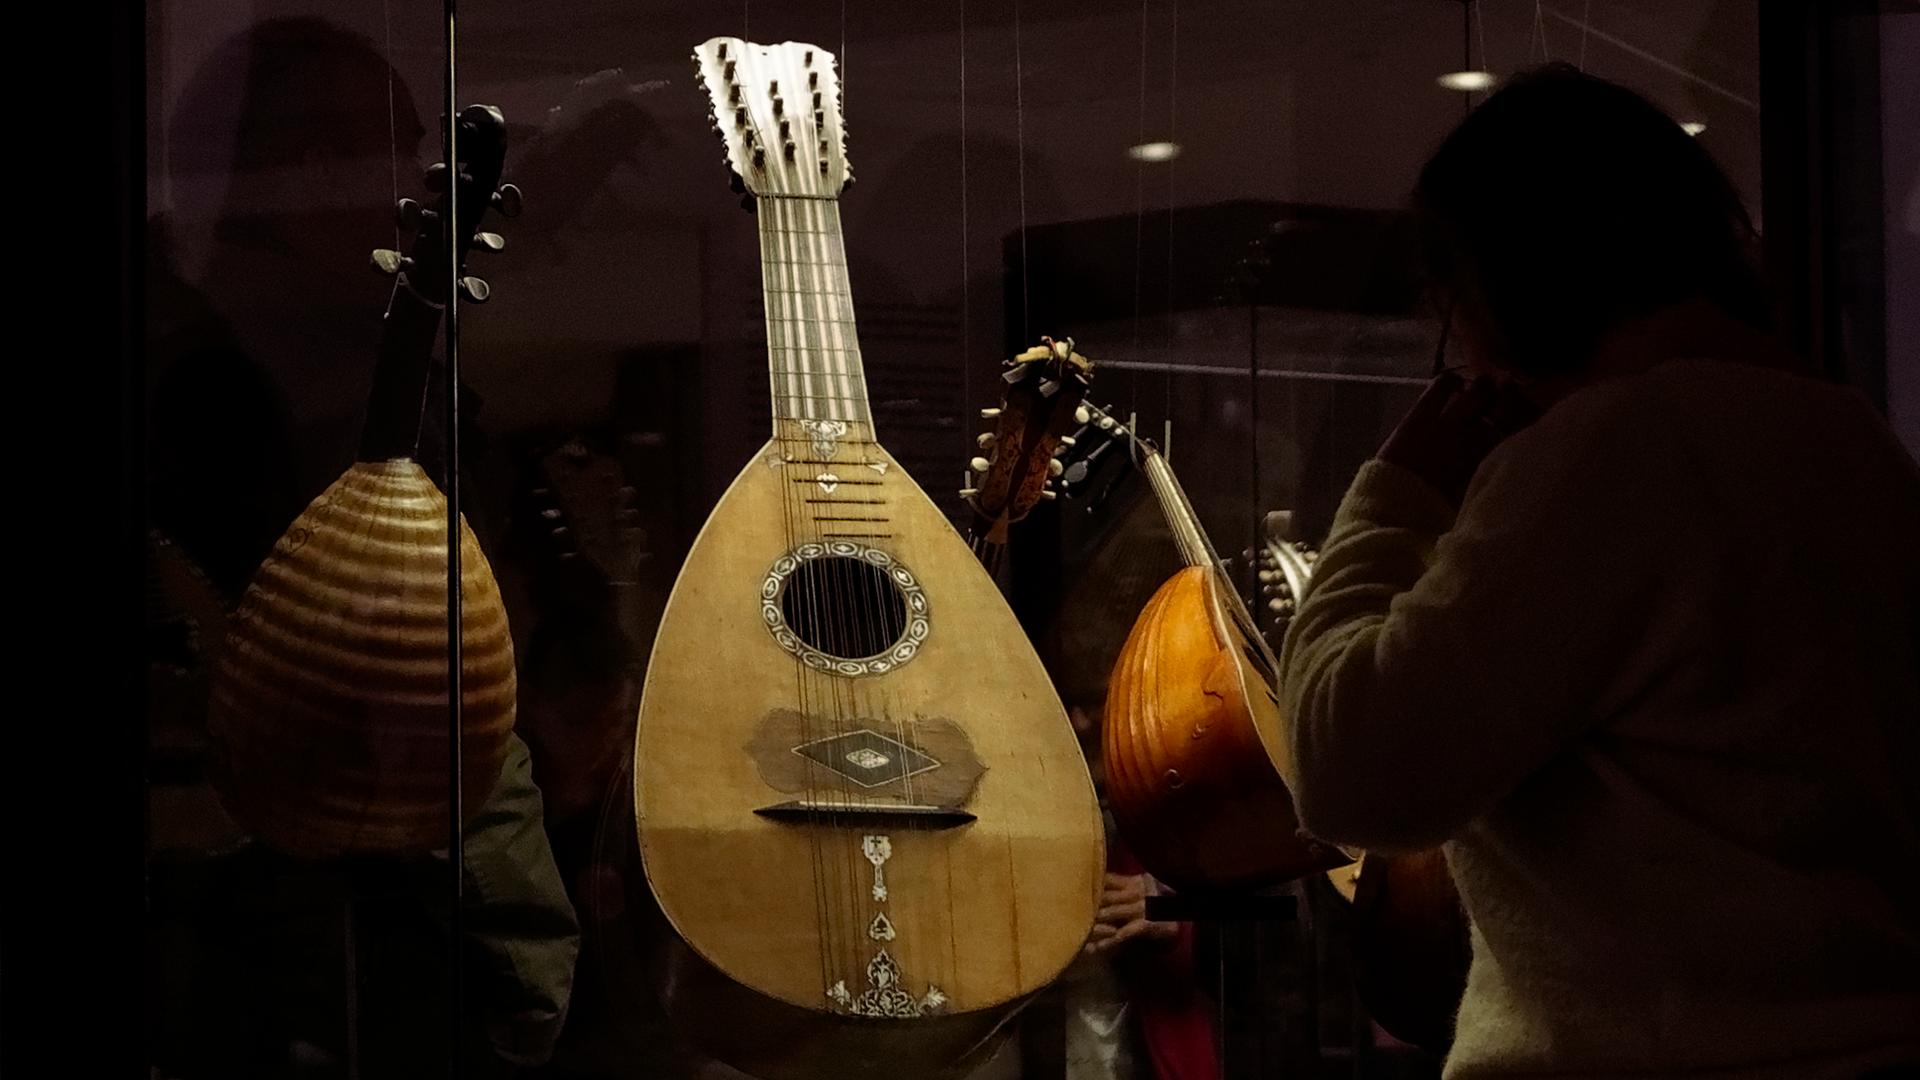 Ein Zupfinstrument aus hellem Holz steht in einer Vitrine. Der Hals des Instruments ist eher kurz, der Resonanzkörper rund, es ist eine Mandoline.